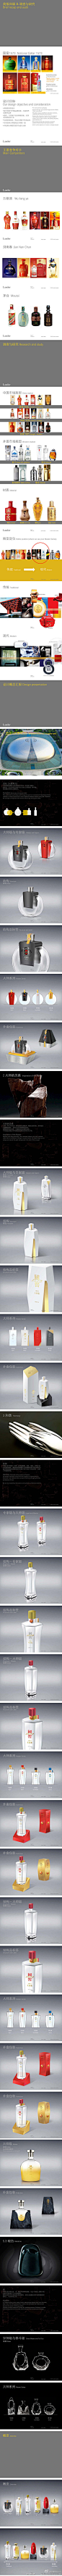 朗涛Landor设计《国窖1573"大师"》系列包装设计。via：品牌研究中心